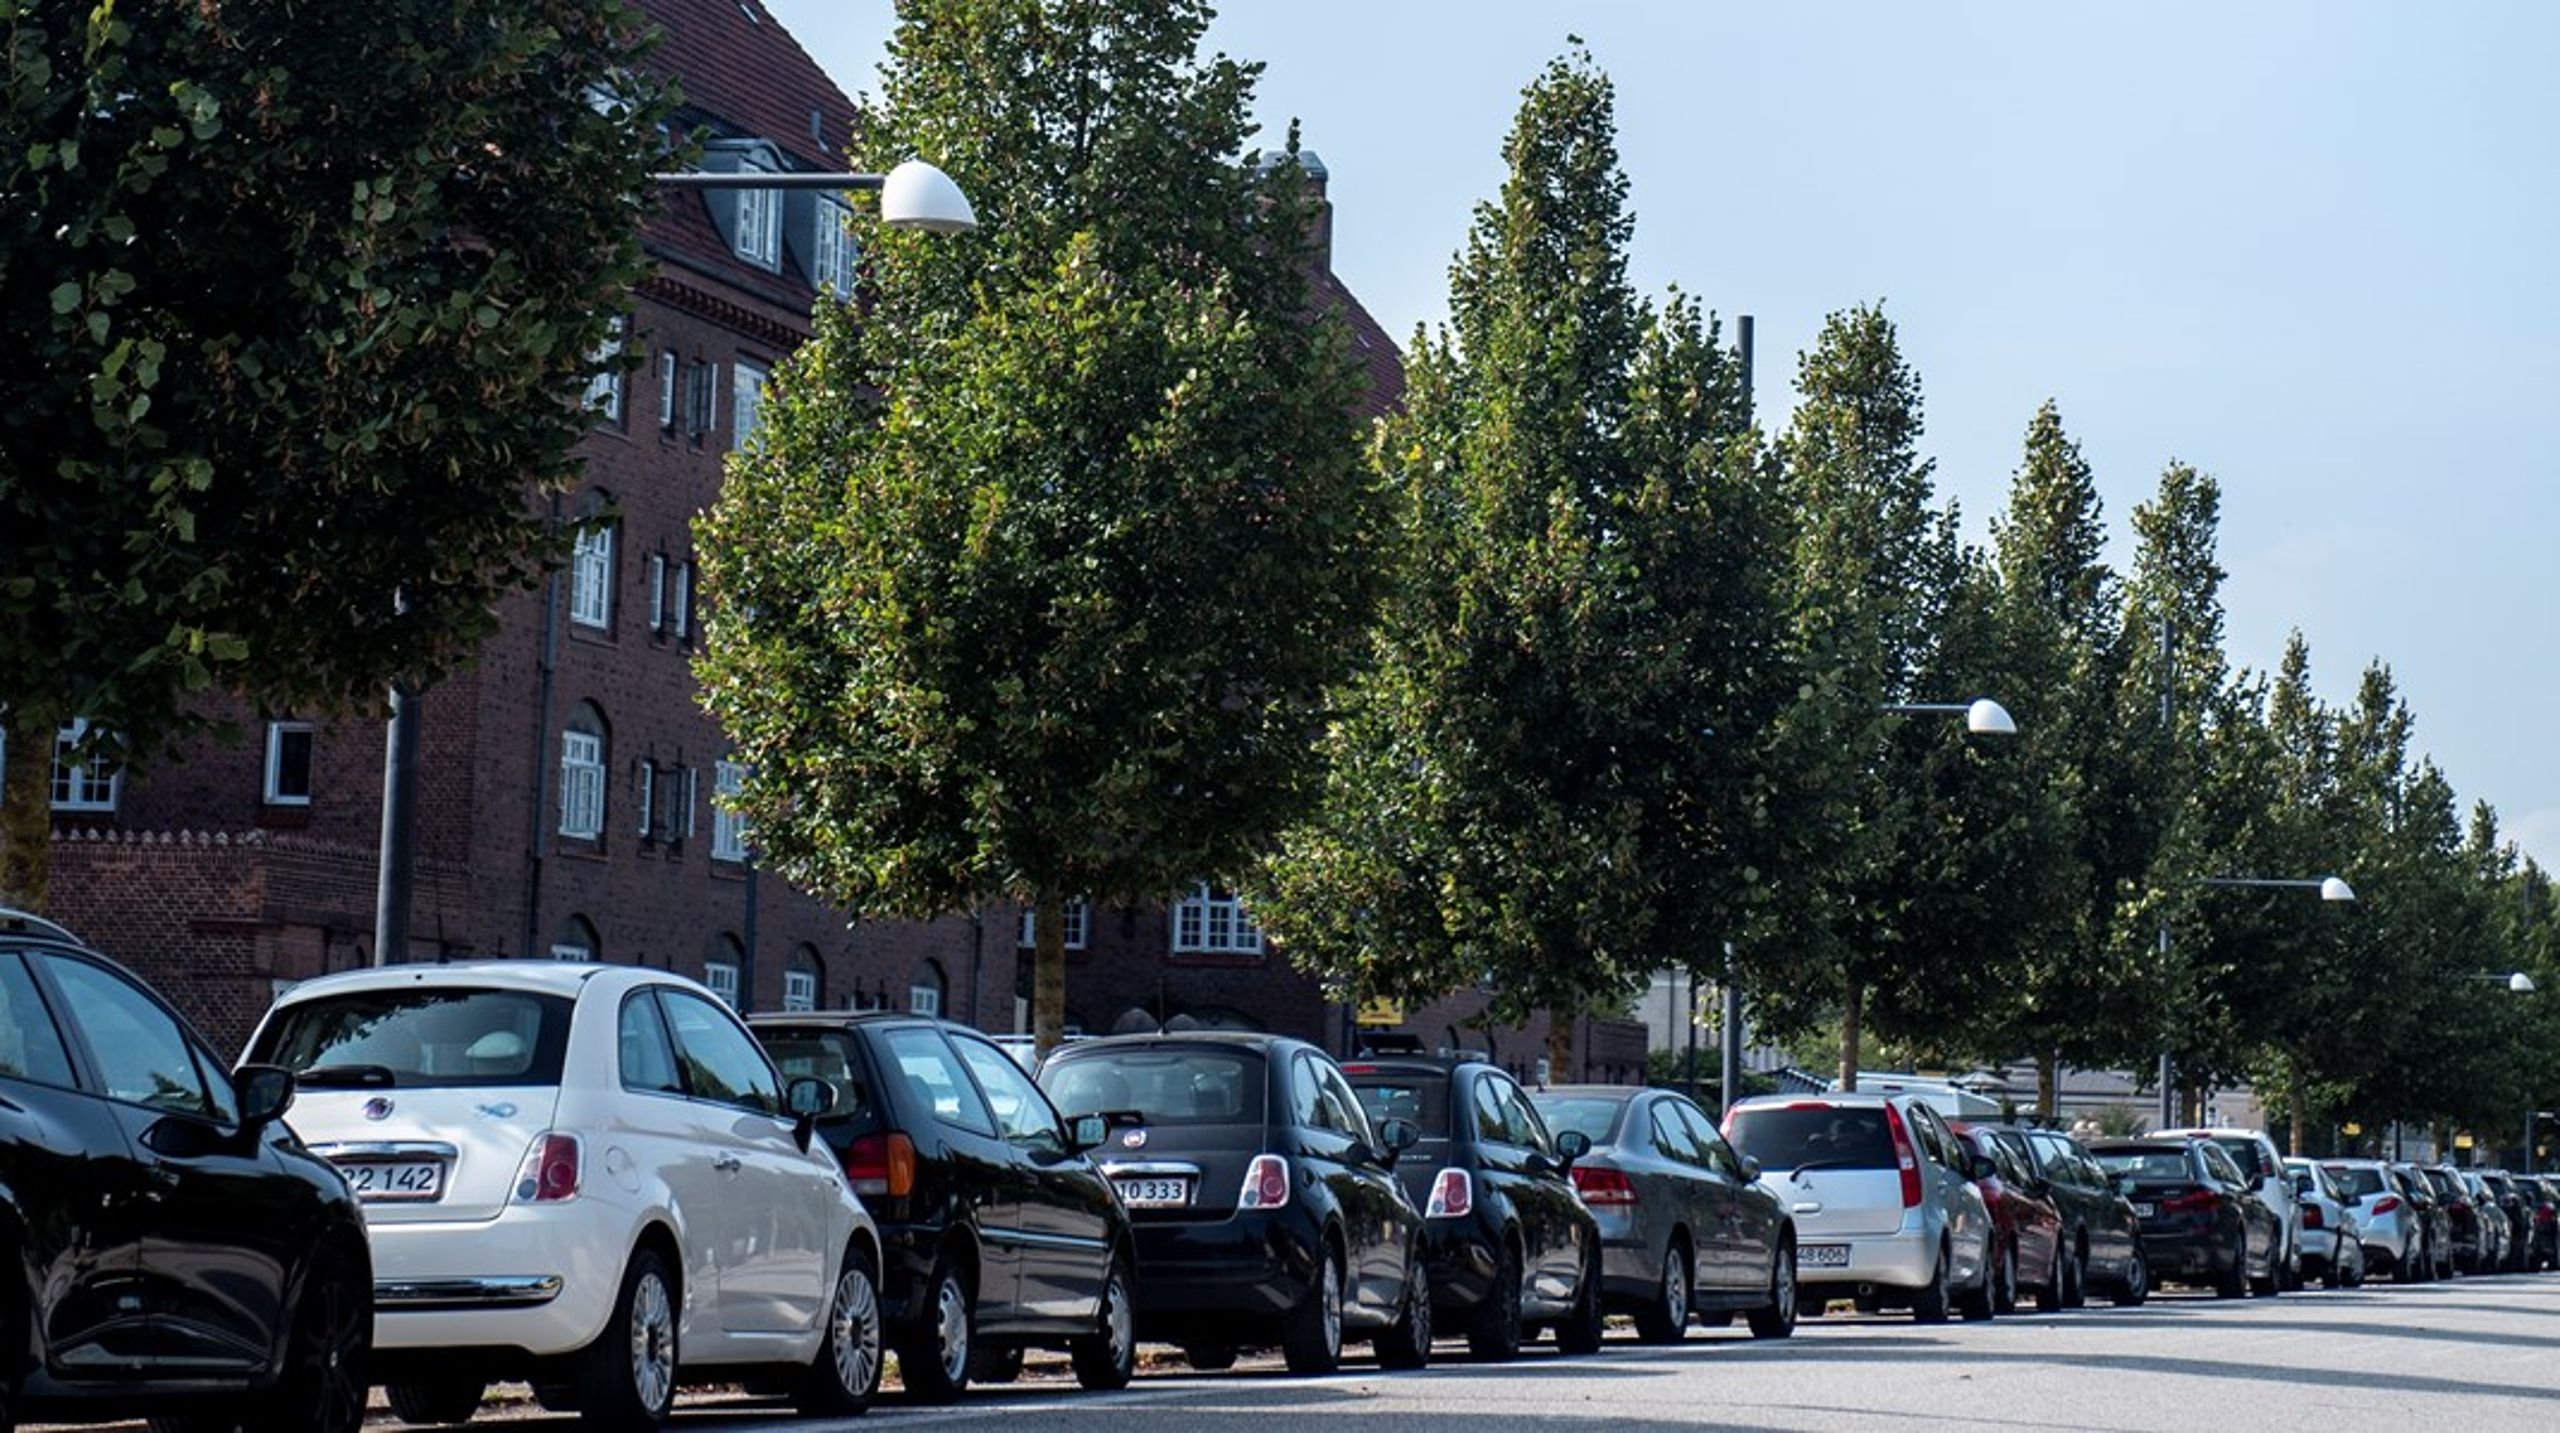 Hvis man ønsker at frede alle bilisternes asfalterede arealer på
Frederiksberg, så er det korrekt, at man ikke både kan få både mere grønt og
flere betalbare boliger, skriver Rasmus Holme (EL).